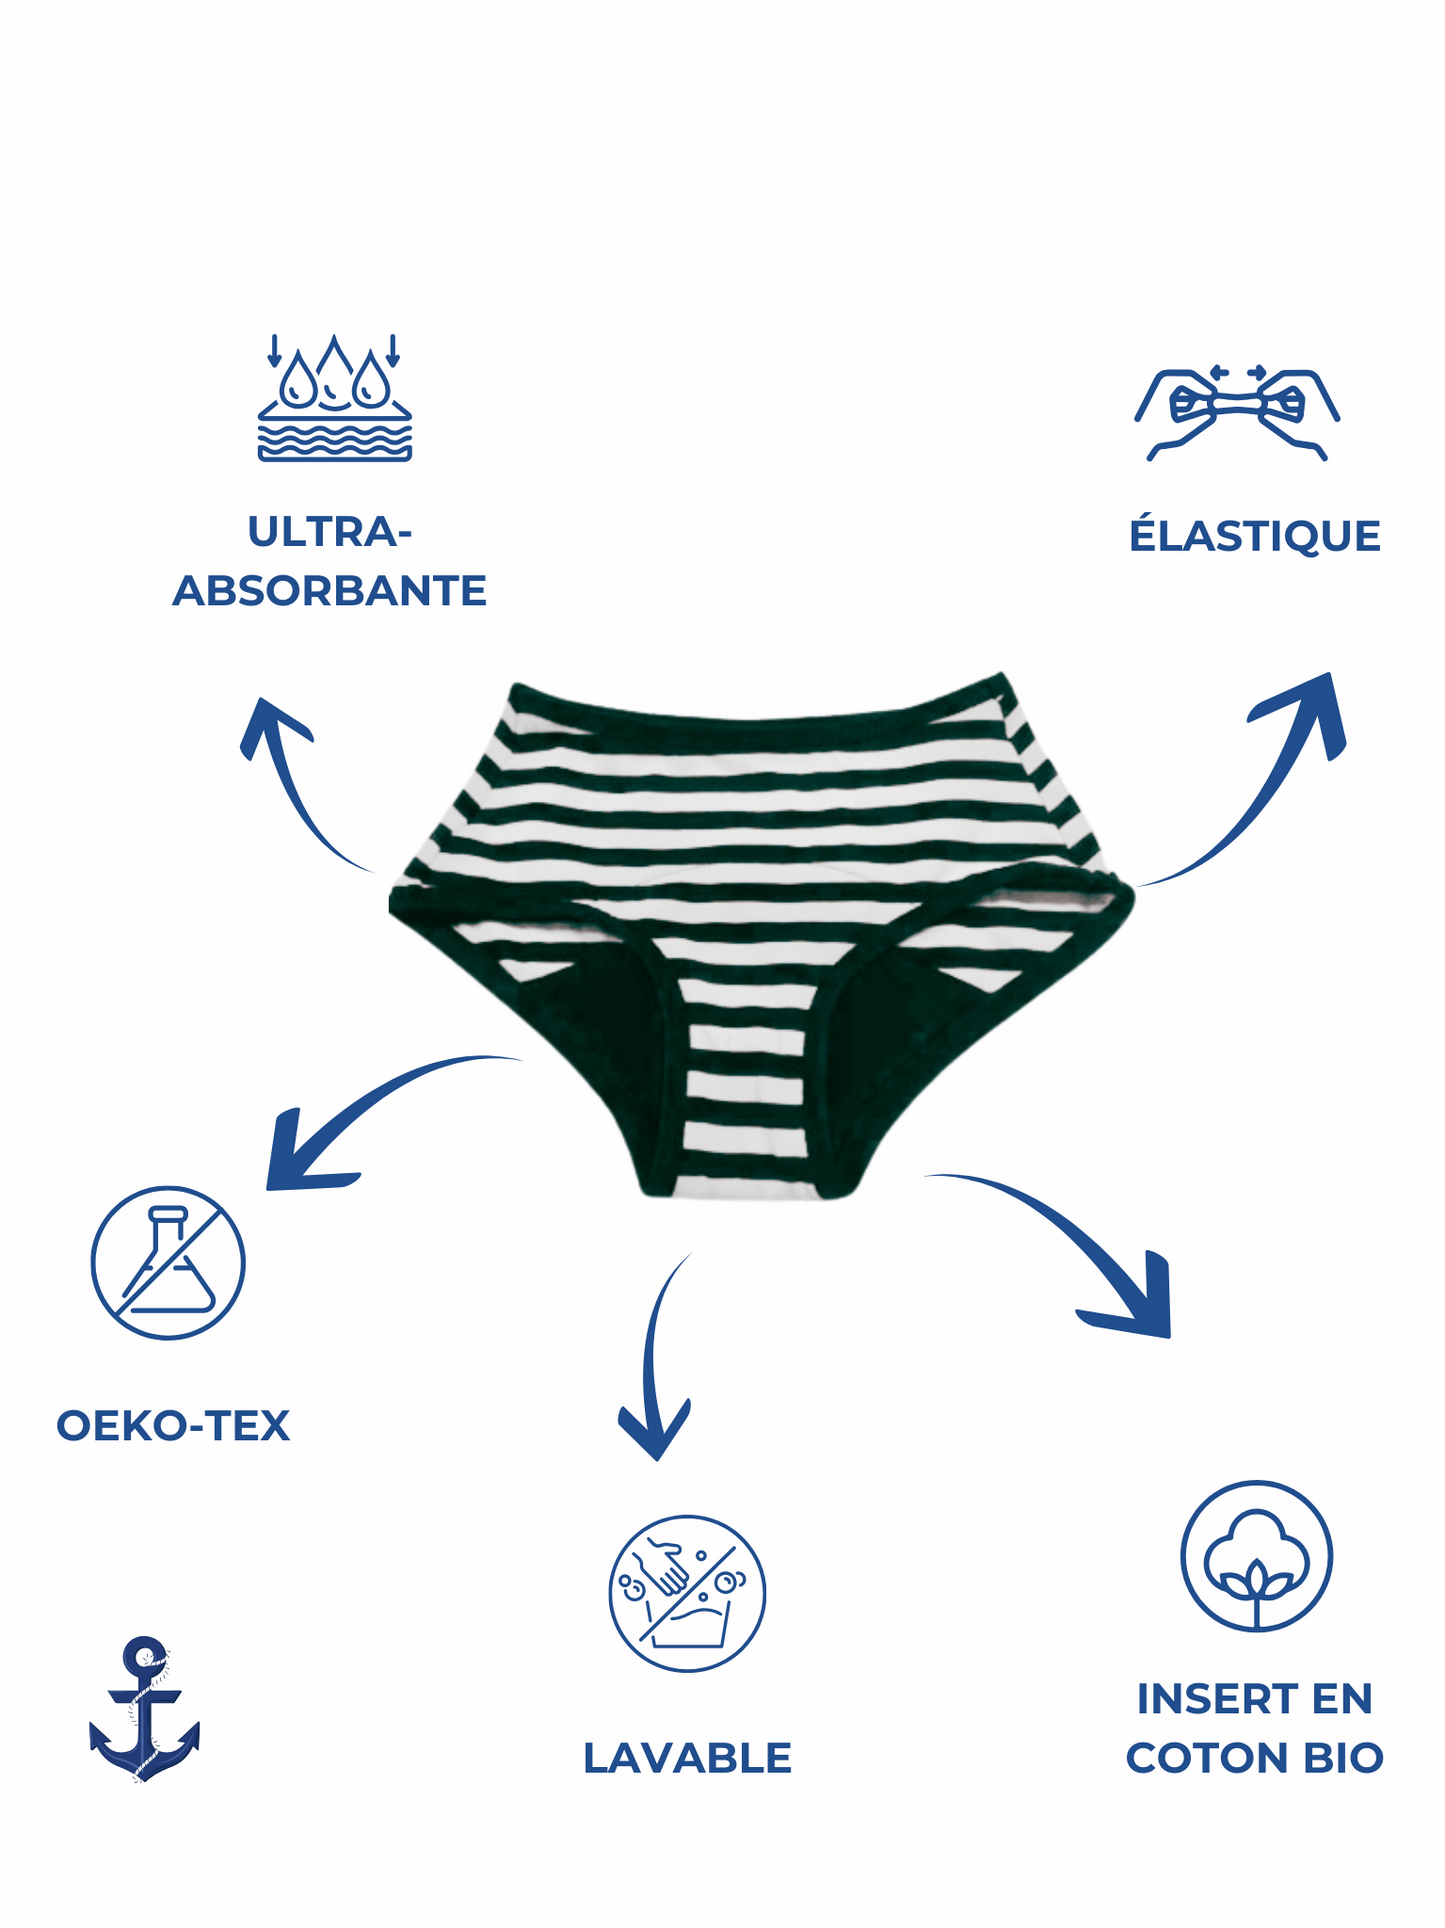 schéma des qualités de la culotte menstruelle La marinière de Pussyfy